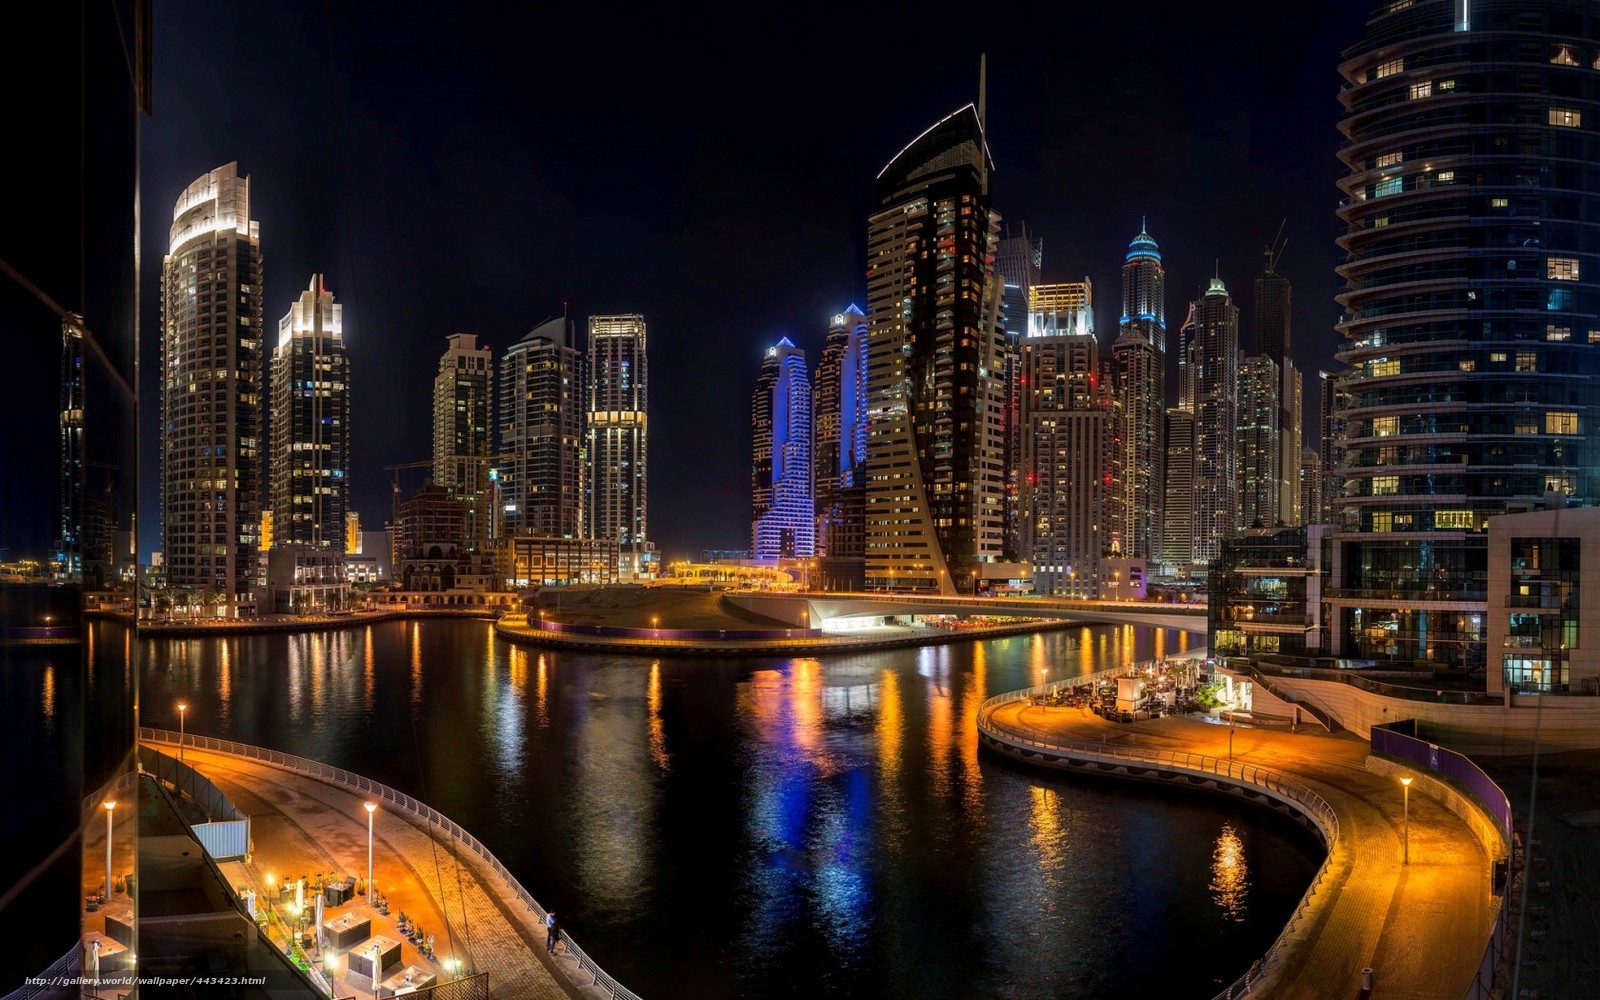 Download wallpaper Dubai dubai UAE city free desktop wallpaper in